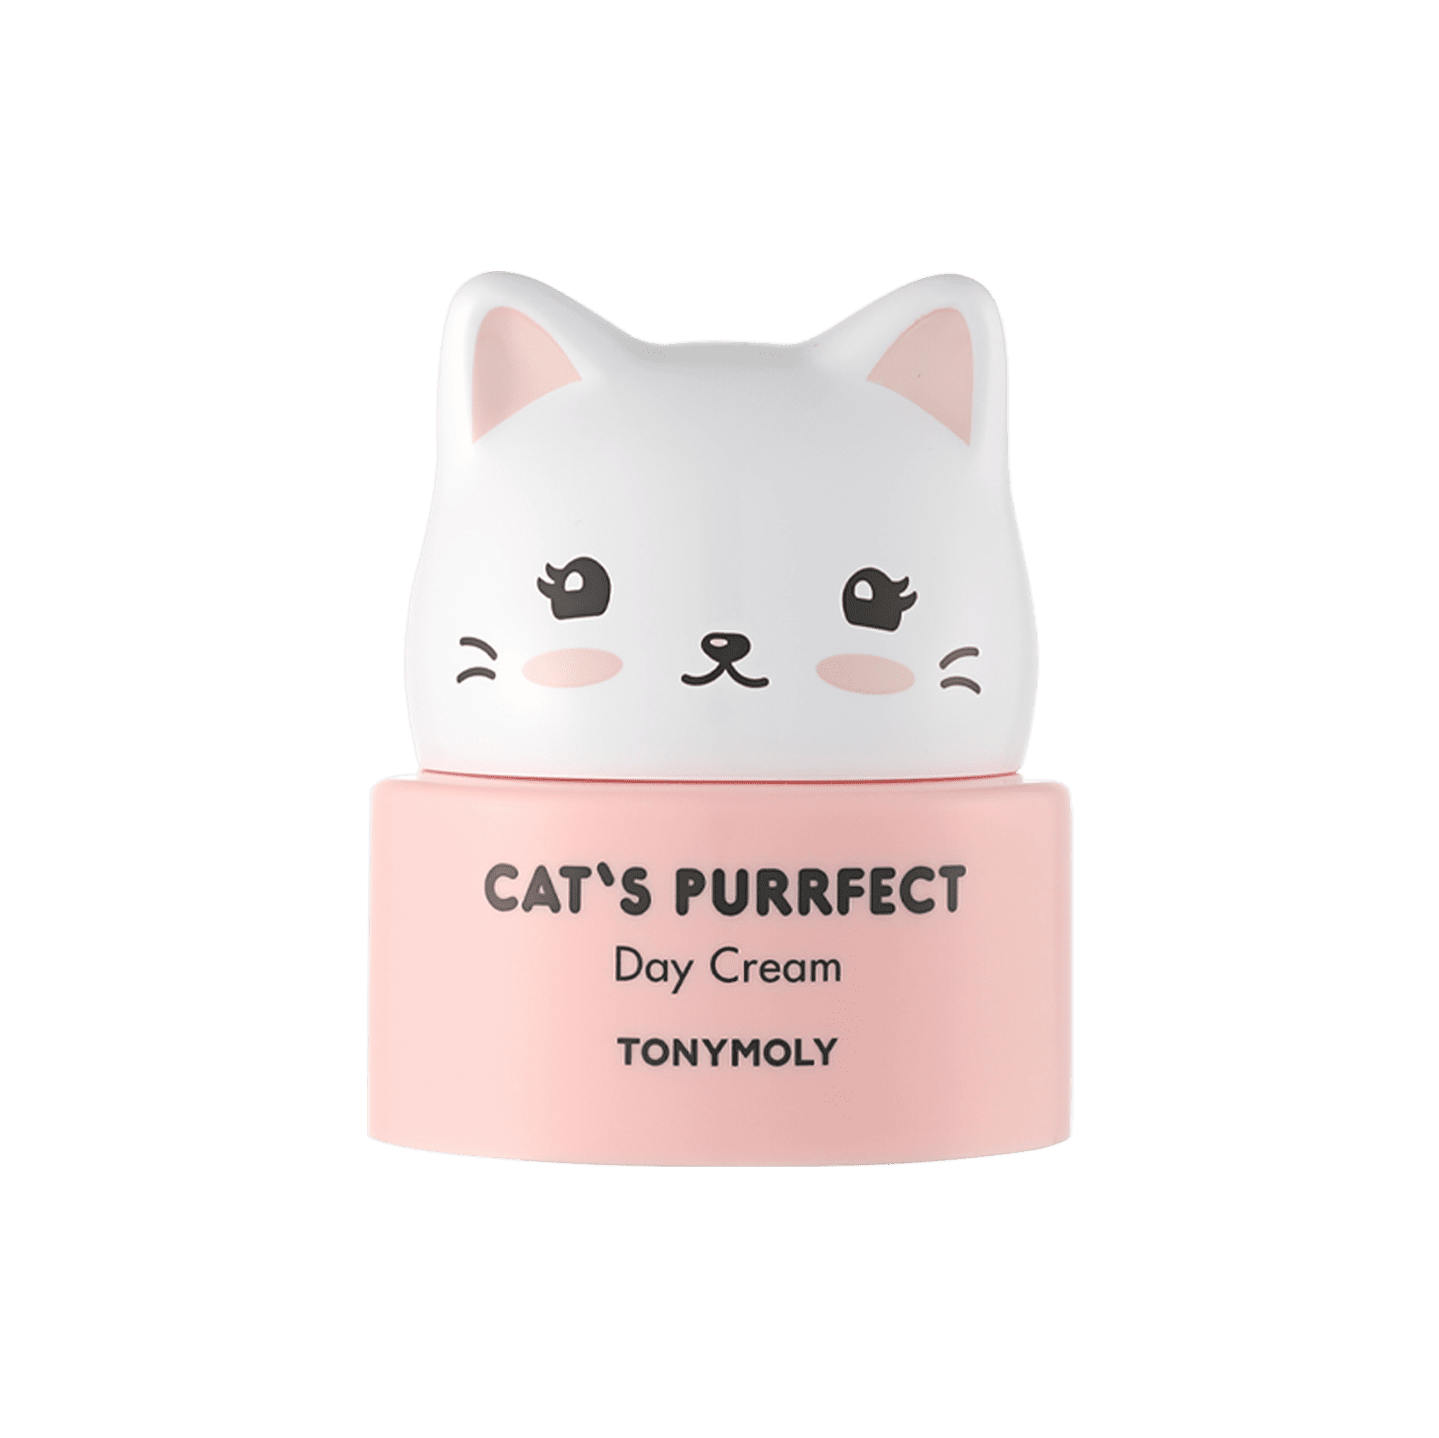 Cat's Purrfect Day Cream